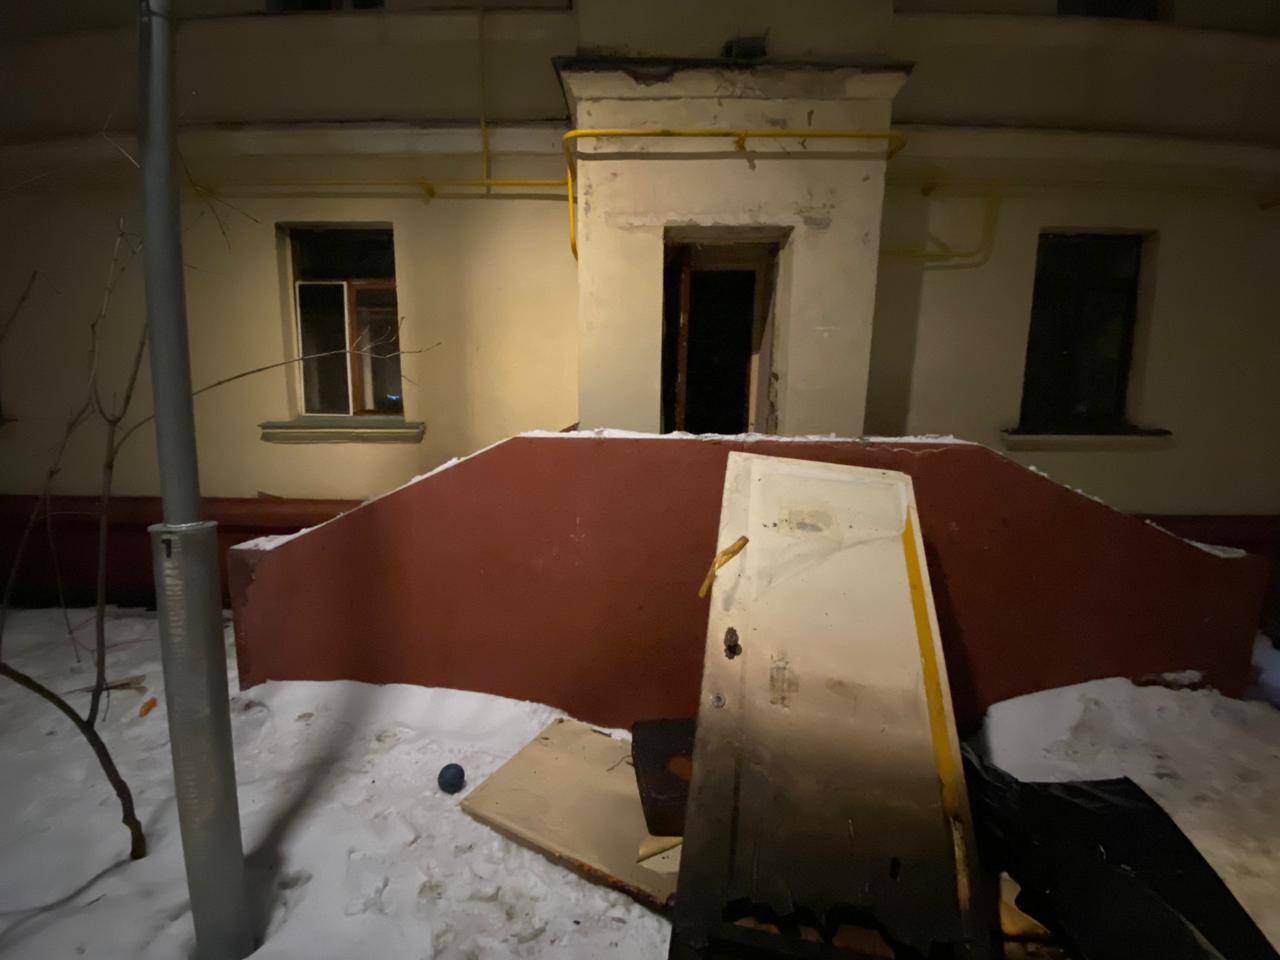 На юго-востоке Москвы после пожара в квартире нашли двух убитых мужчин